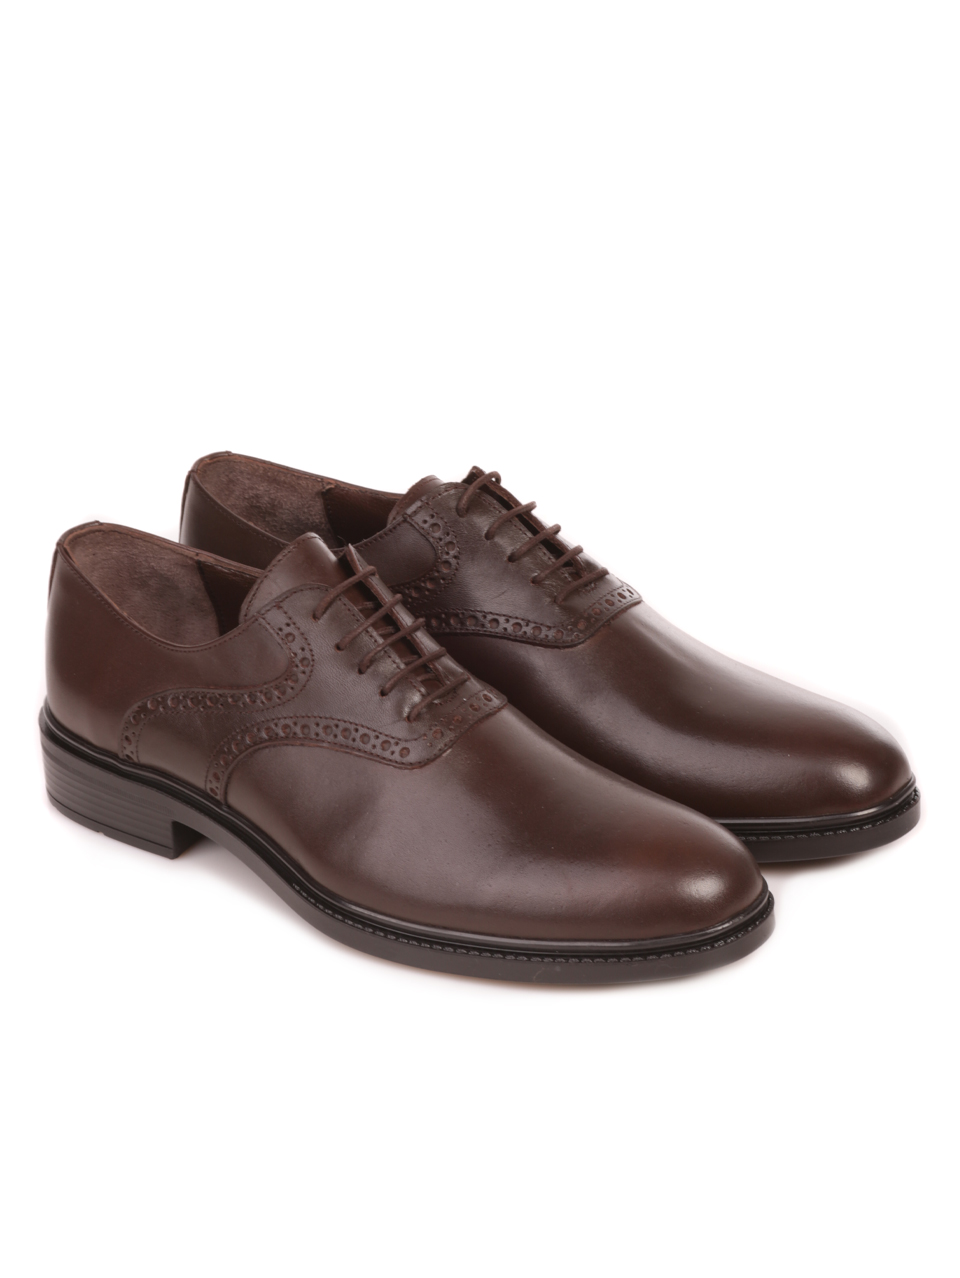 Елегантни мъжки обувки от естествена кожа в кафяво 7AT-23739 brown